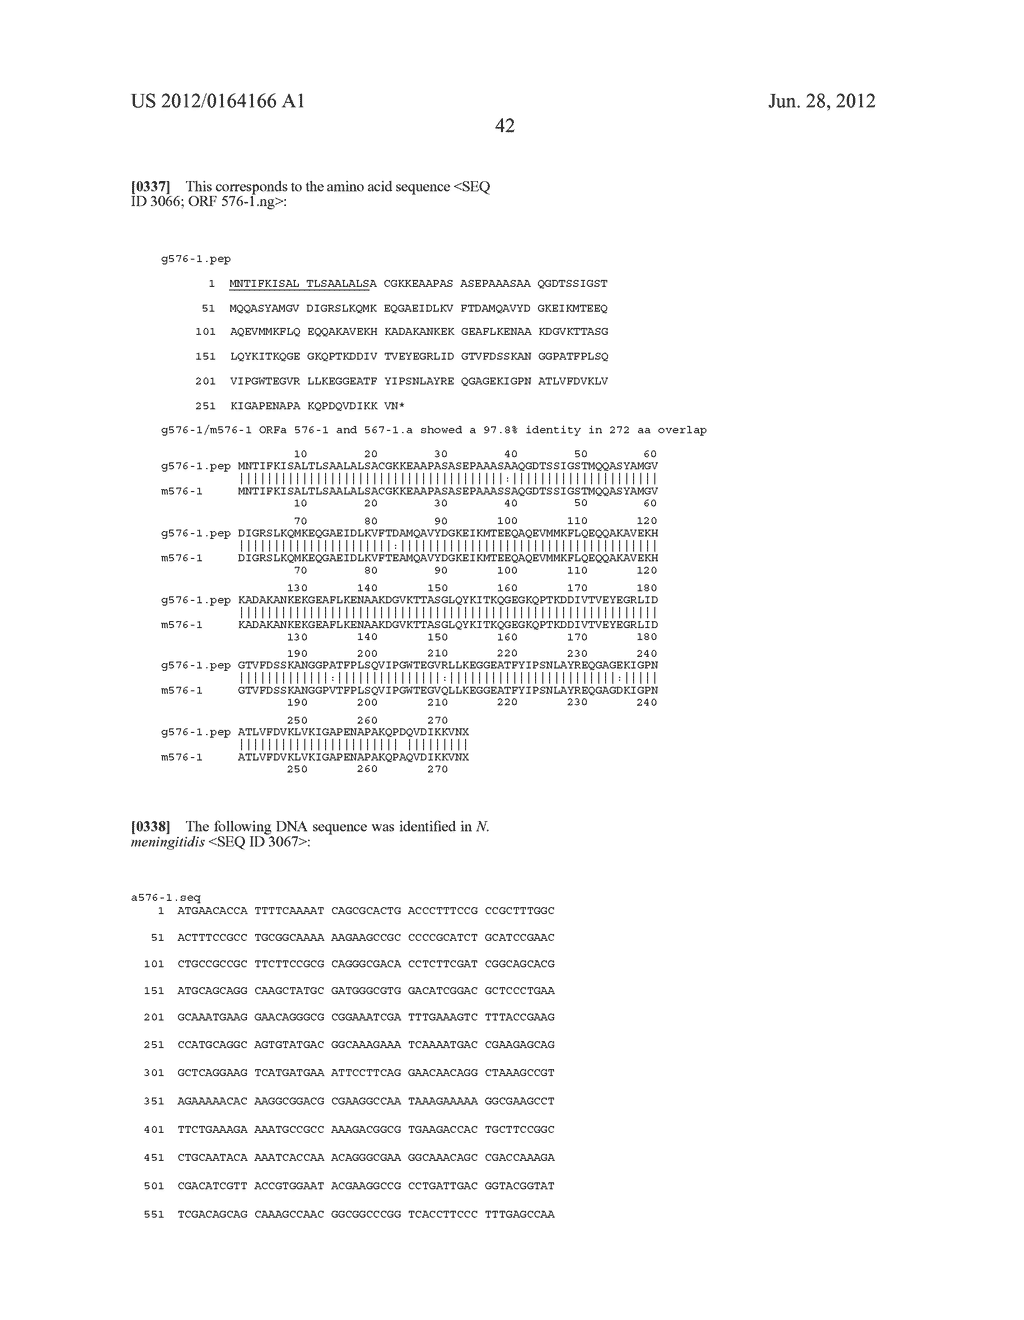 NEISSERIA MENINGITIDIS ANTIGENS AND COMPOSITIONS - diagram, schematic, and image 74